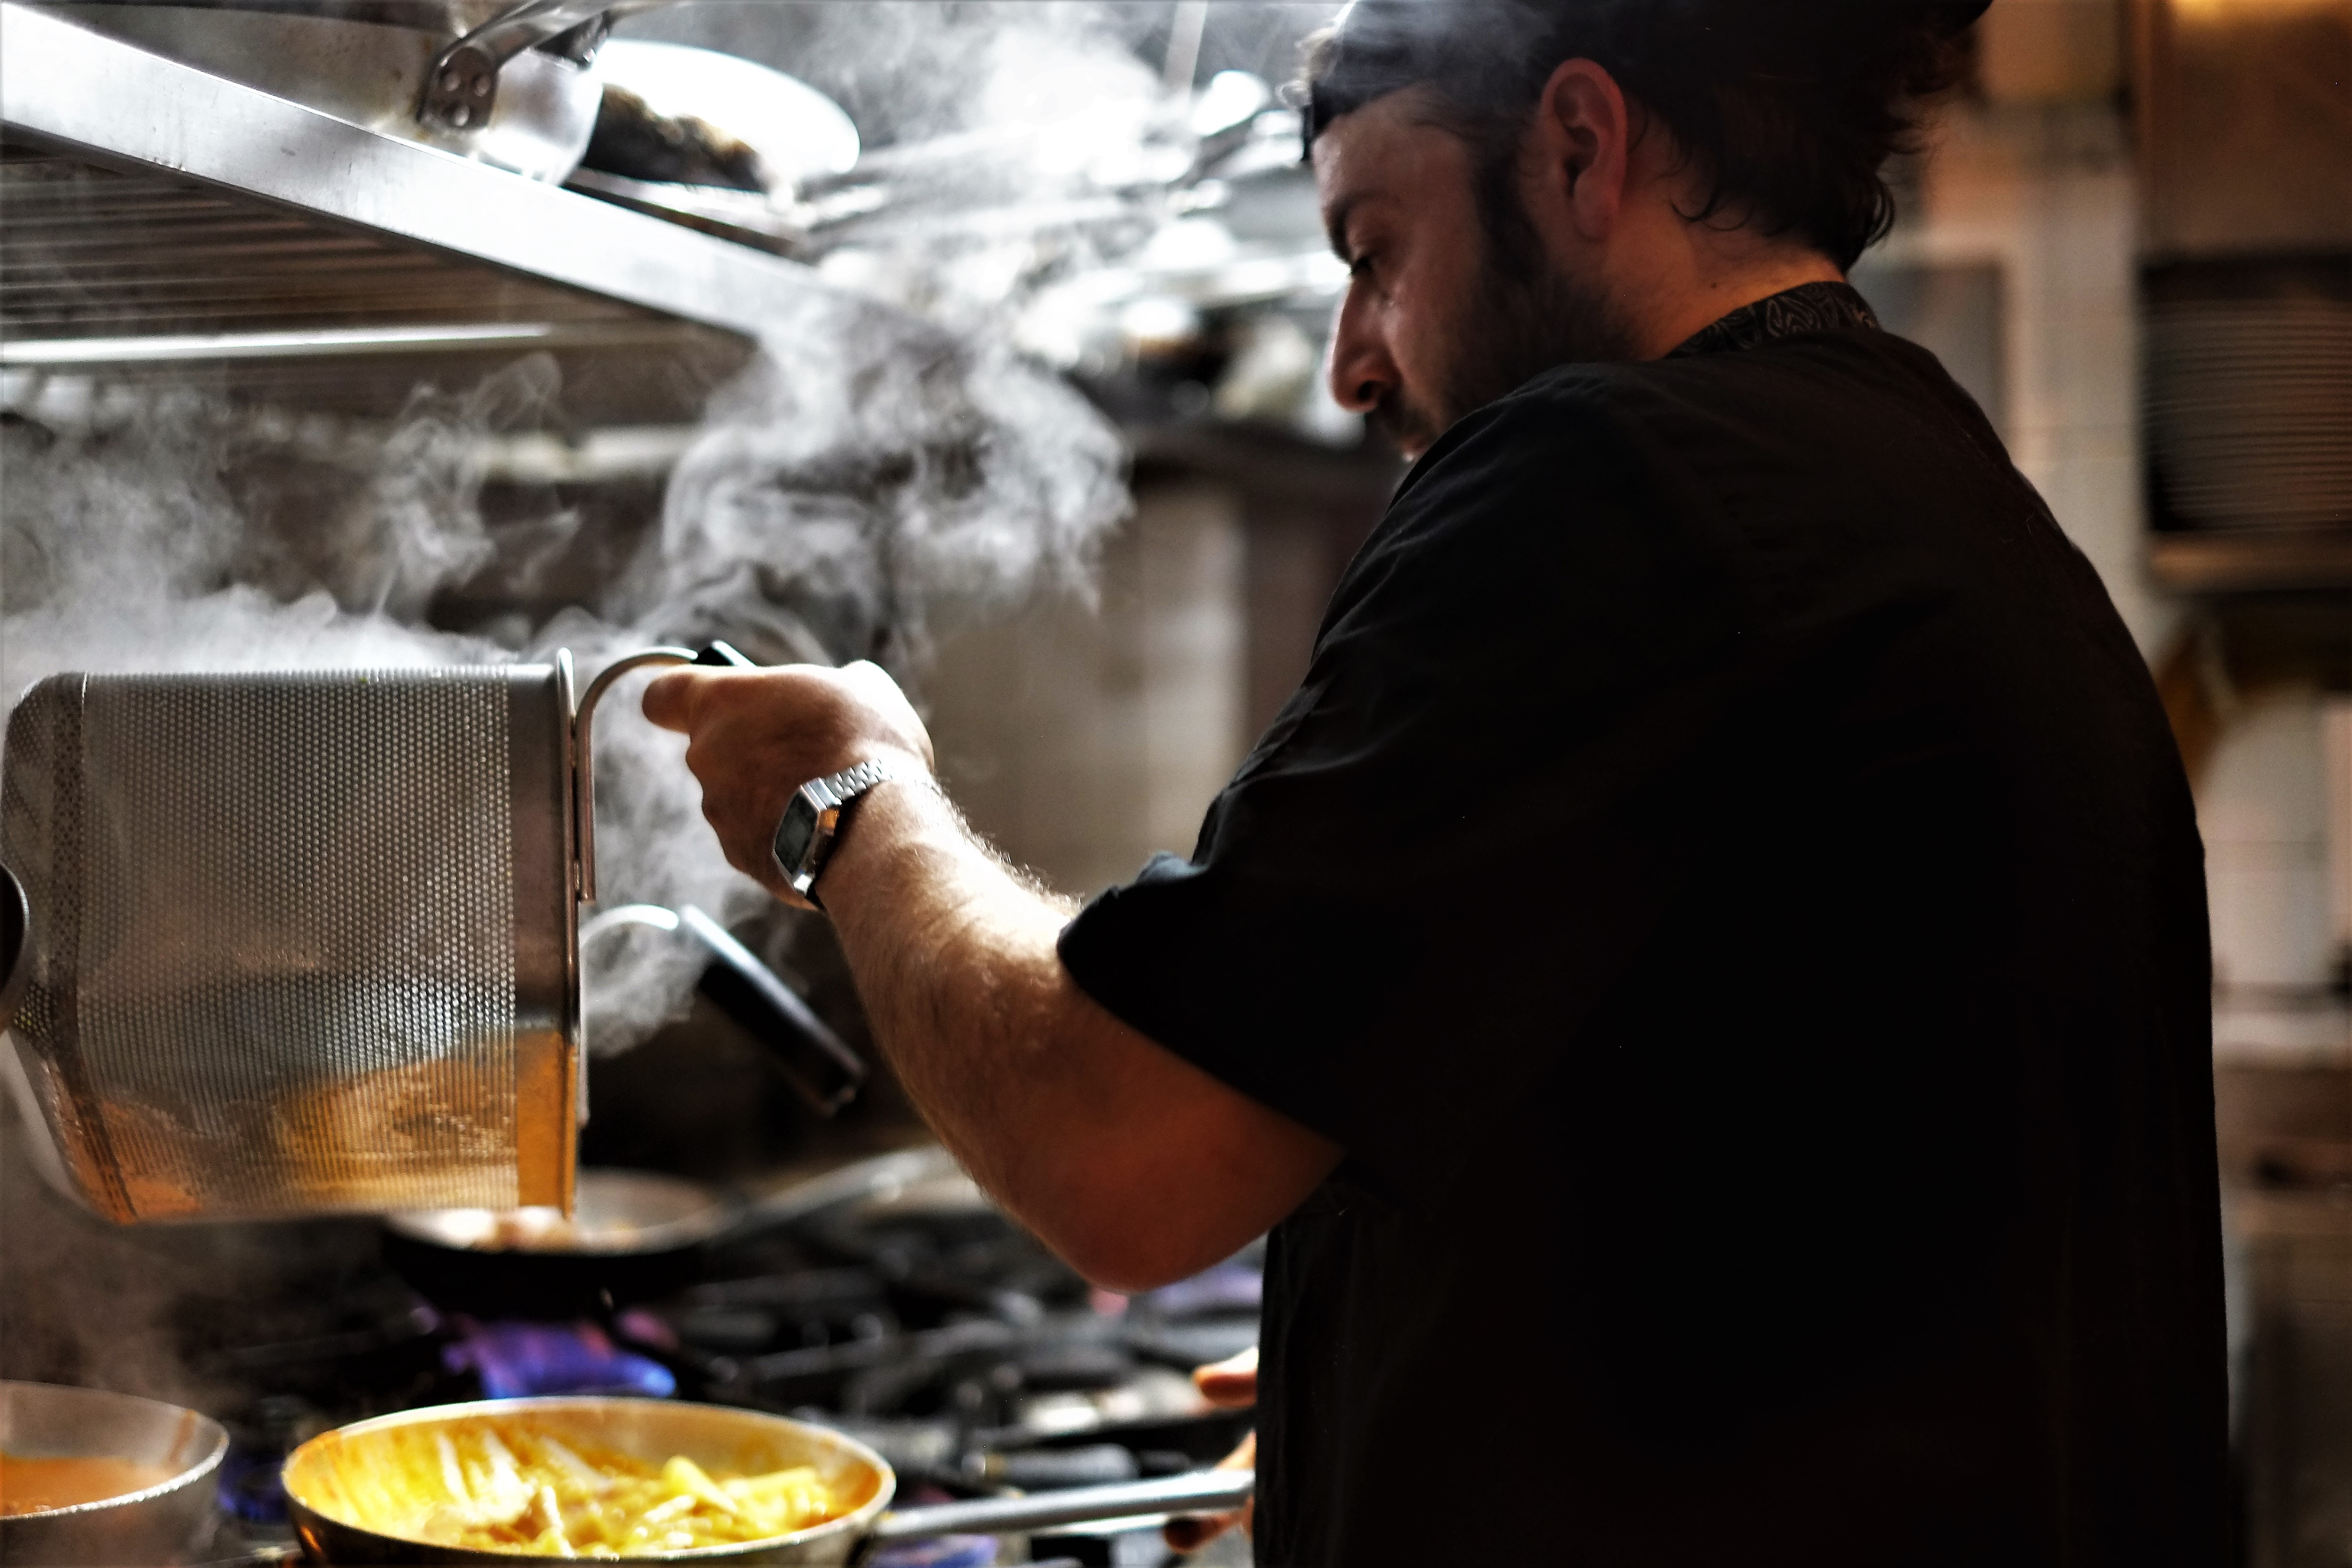 Καταγγελία μάγειρα στην Κρήτη: «Κάηκα με λάδι και με έβαλαν σε ψυγείο με κρέατα» – Παρέμβαση ΣΕΠΕ